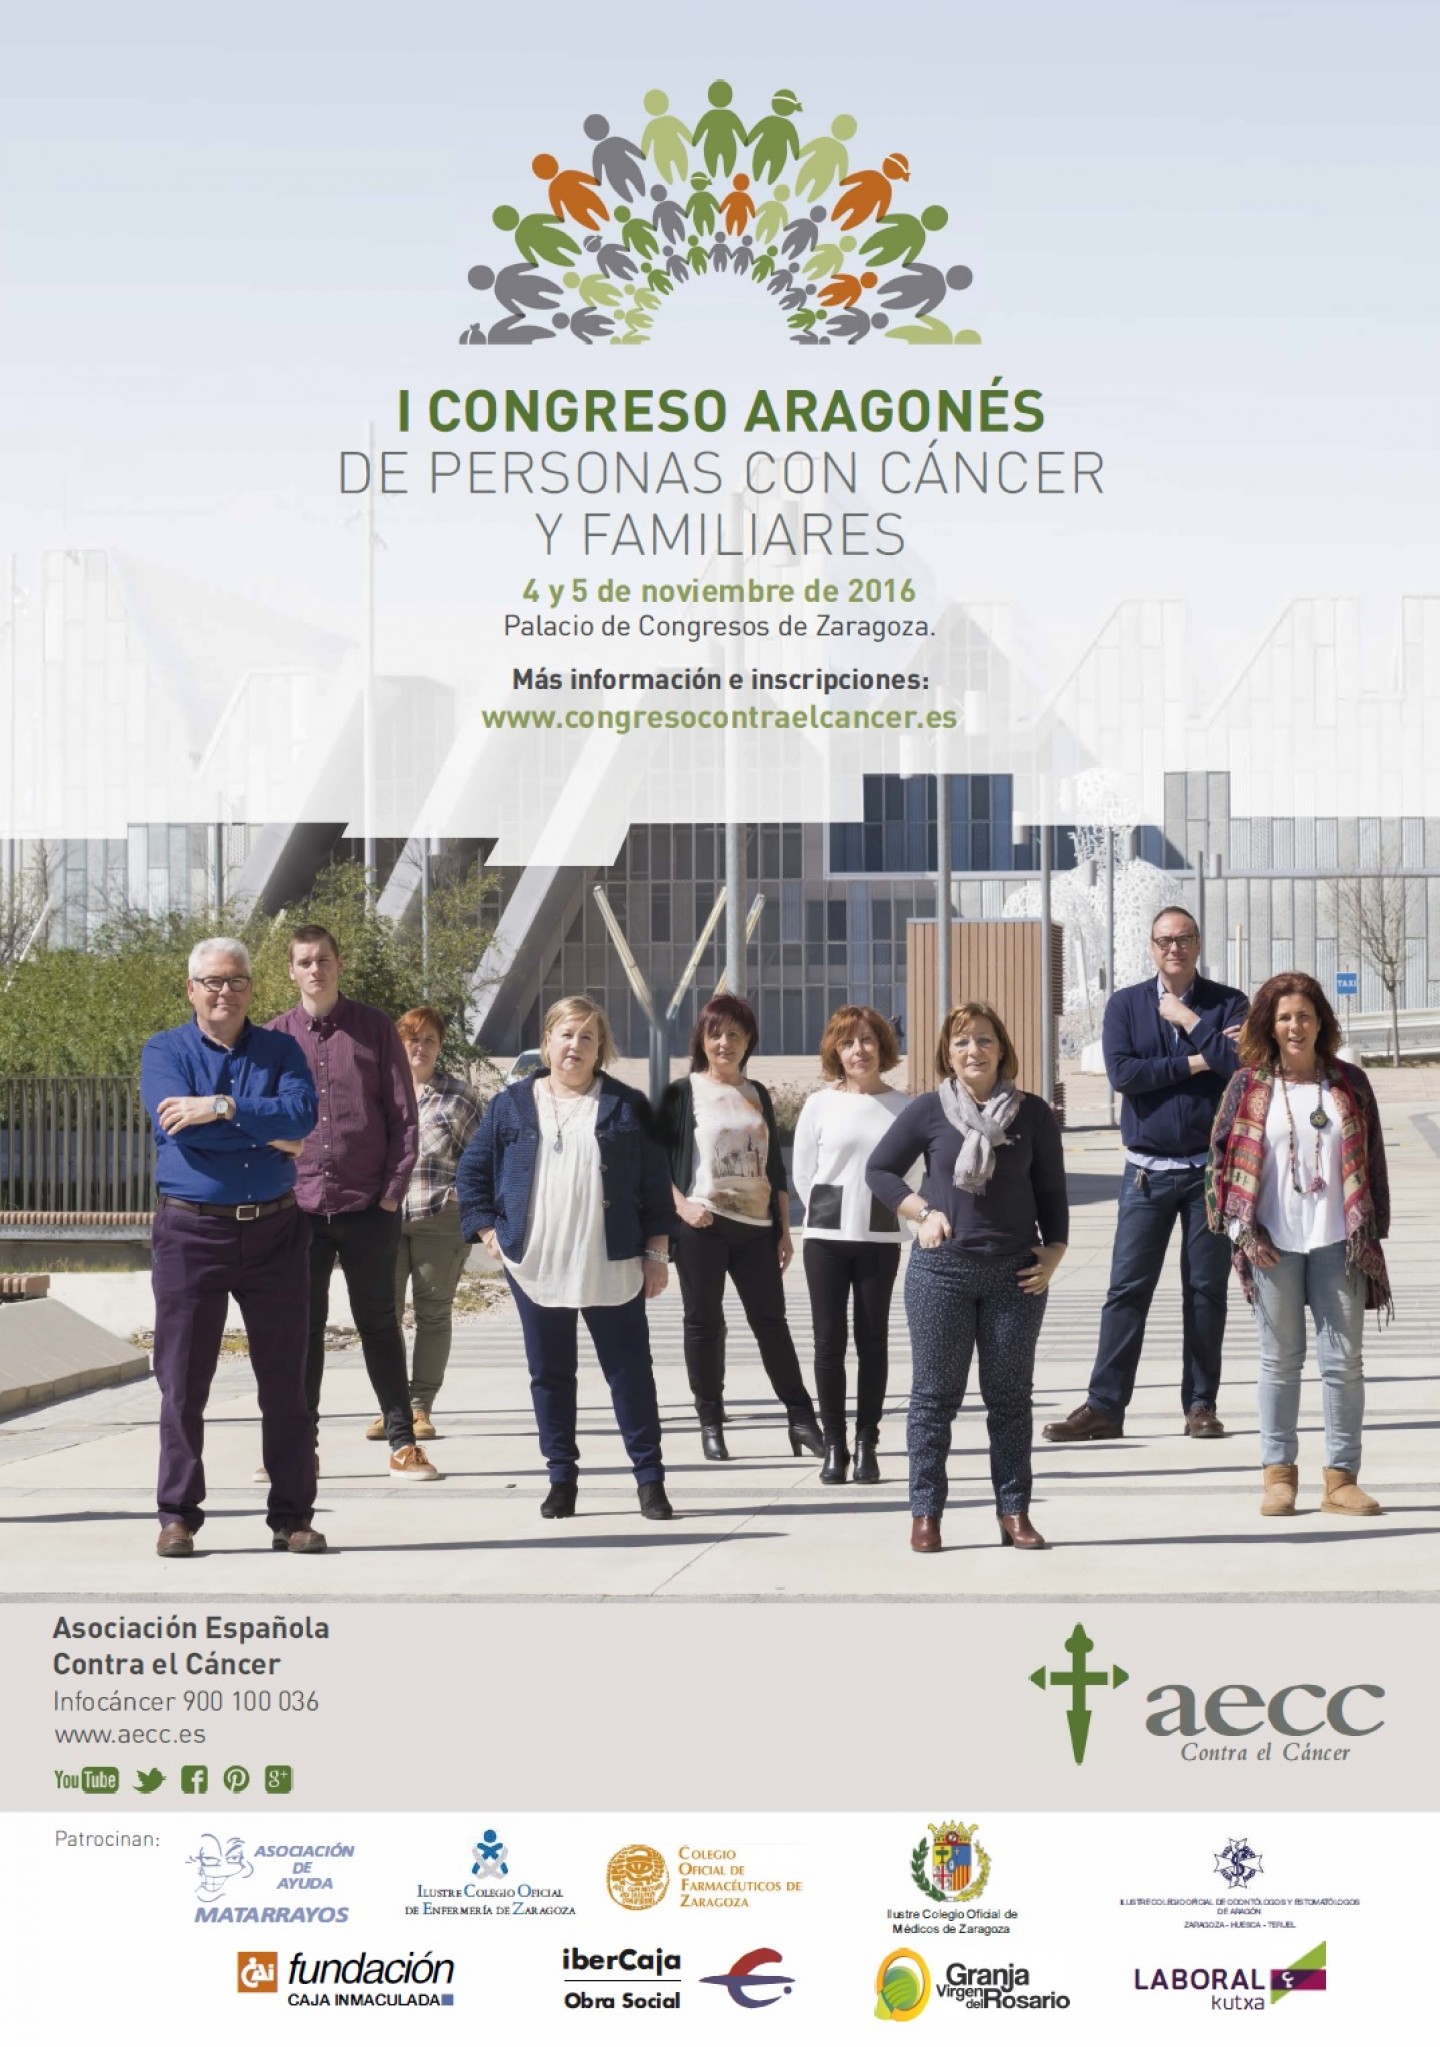 La Asociación Española Contra el Cáncer en Aragón organiza el Primer Congreso Aragonés de Personas con Cáncer y sus Familiares